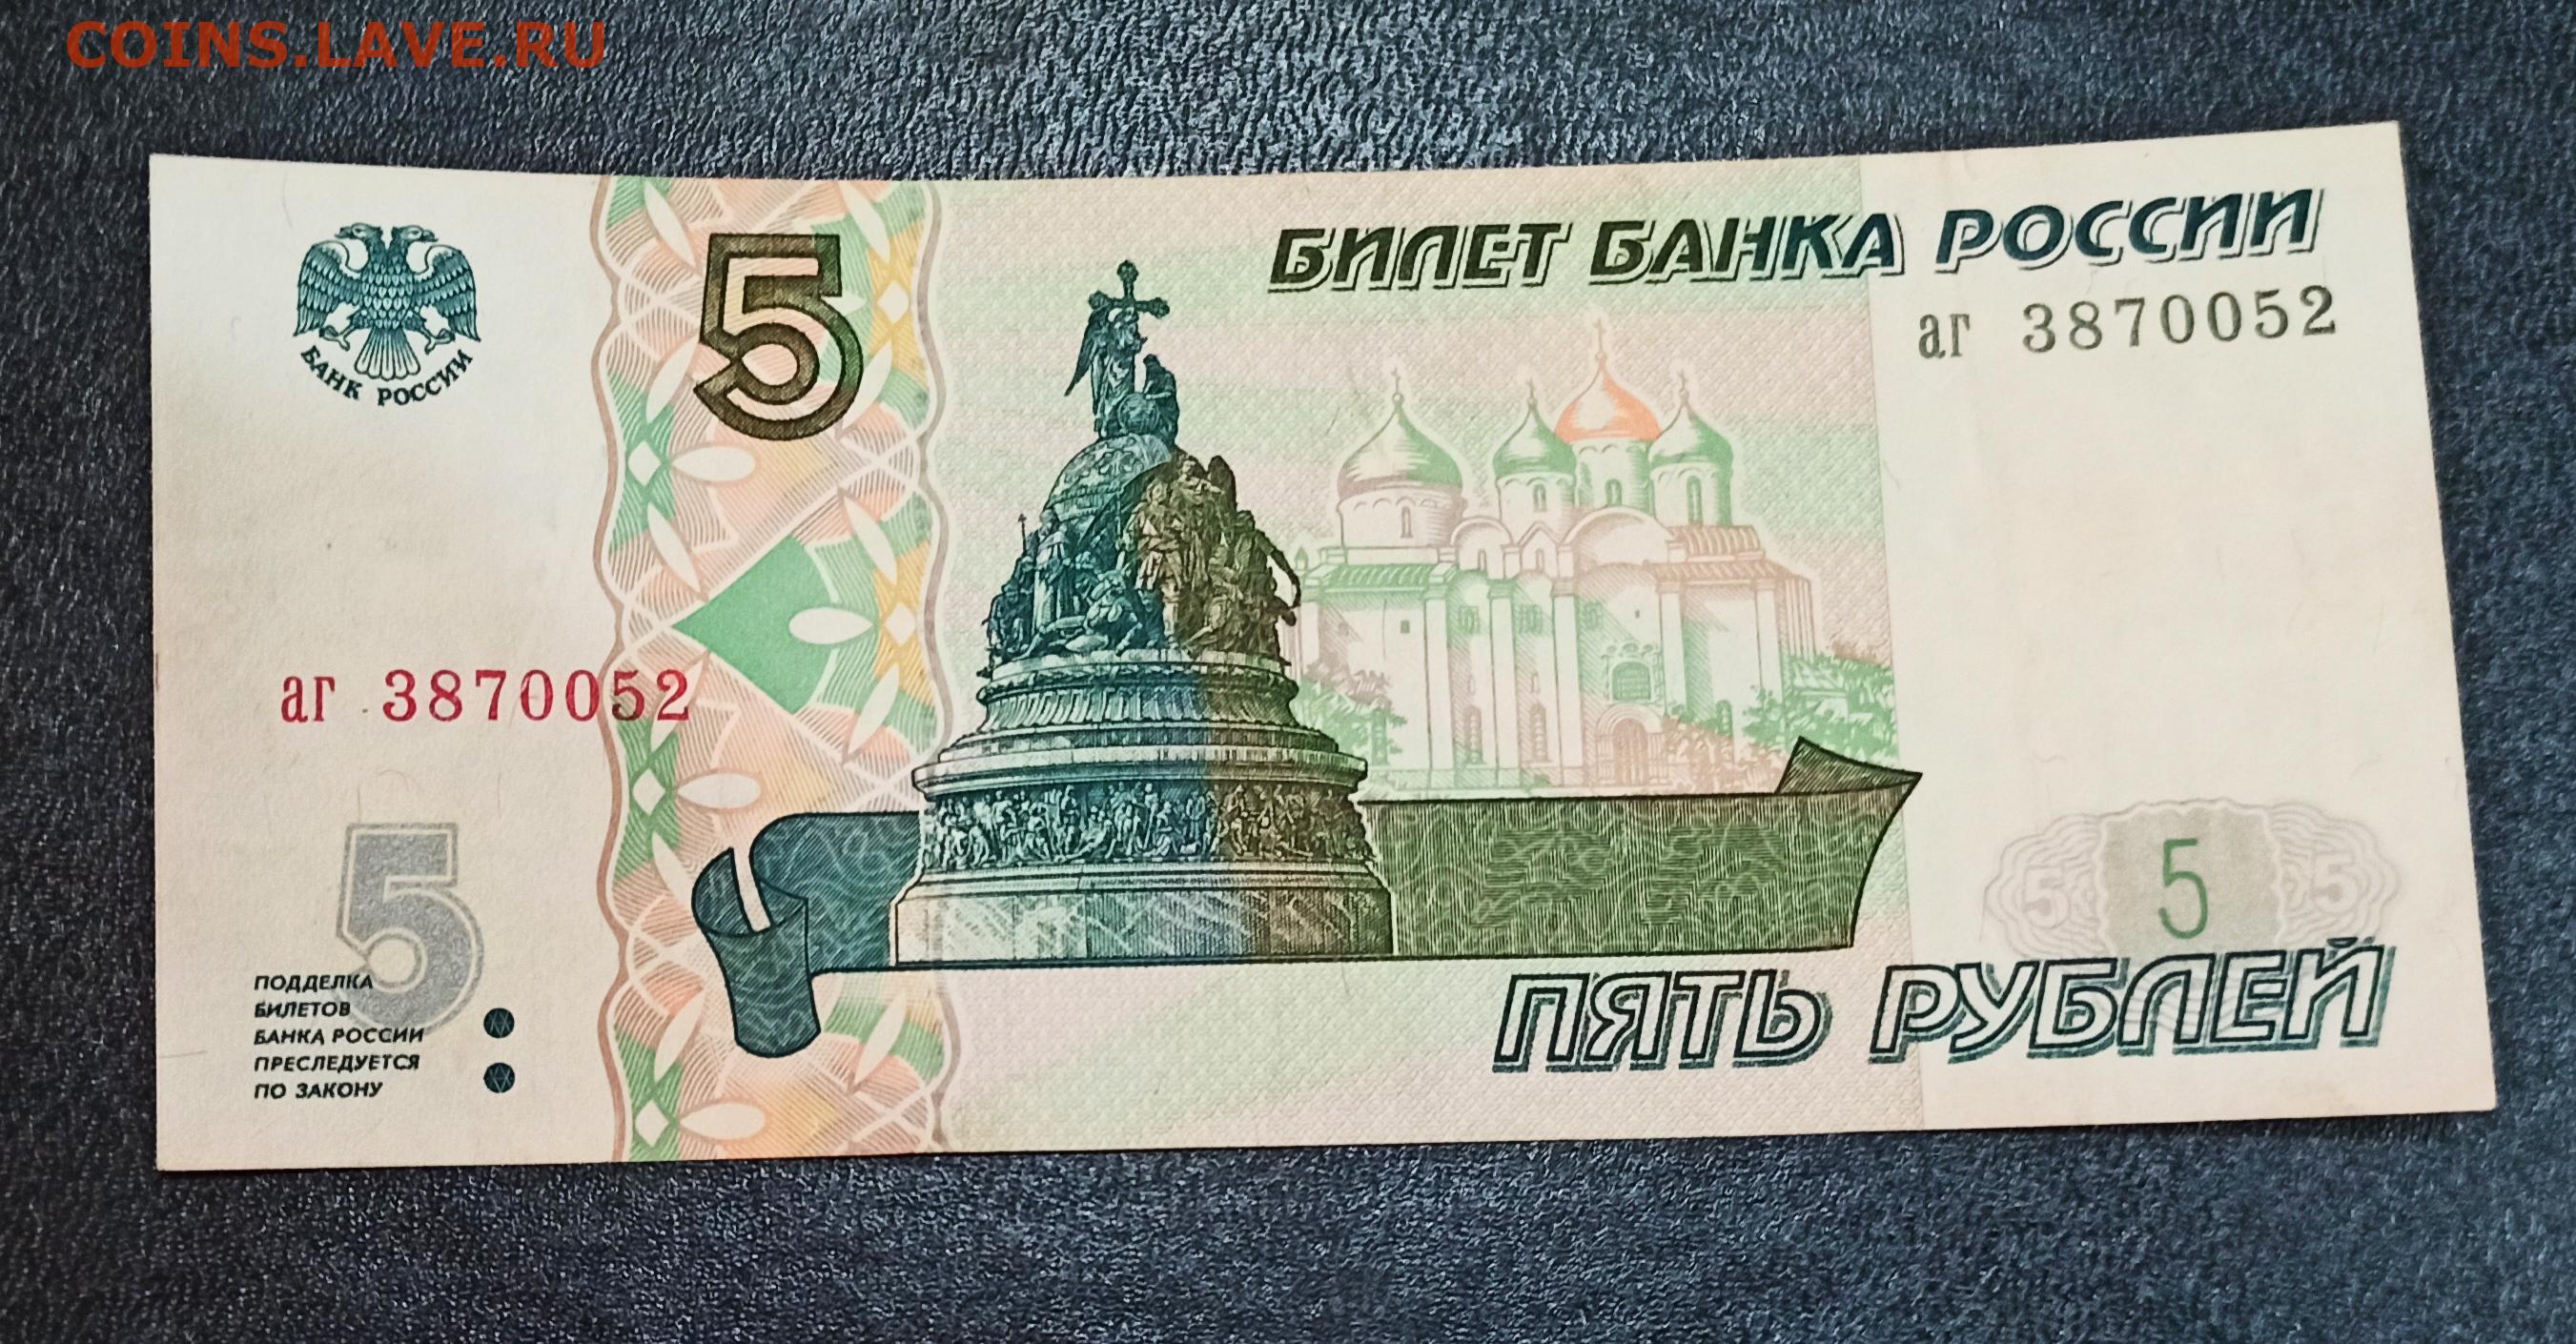 5 Рублей 1998 бумажные. Российские 5 рублей бумажные. Банкнота 5 рублей. Пять рублей купюра.